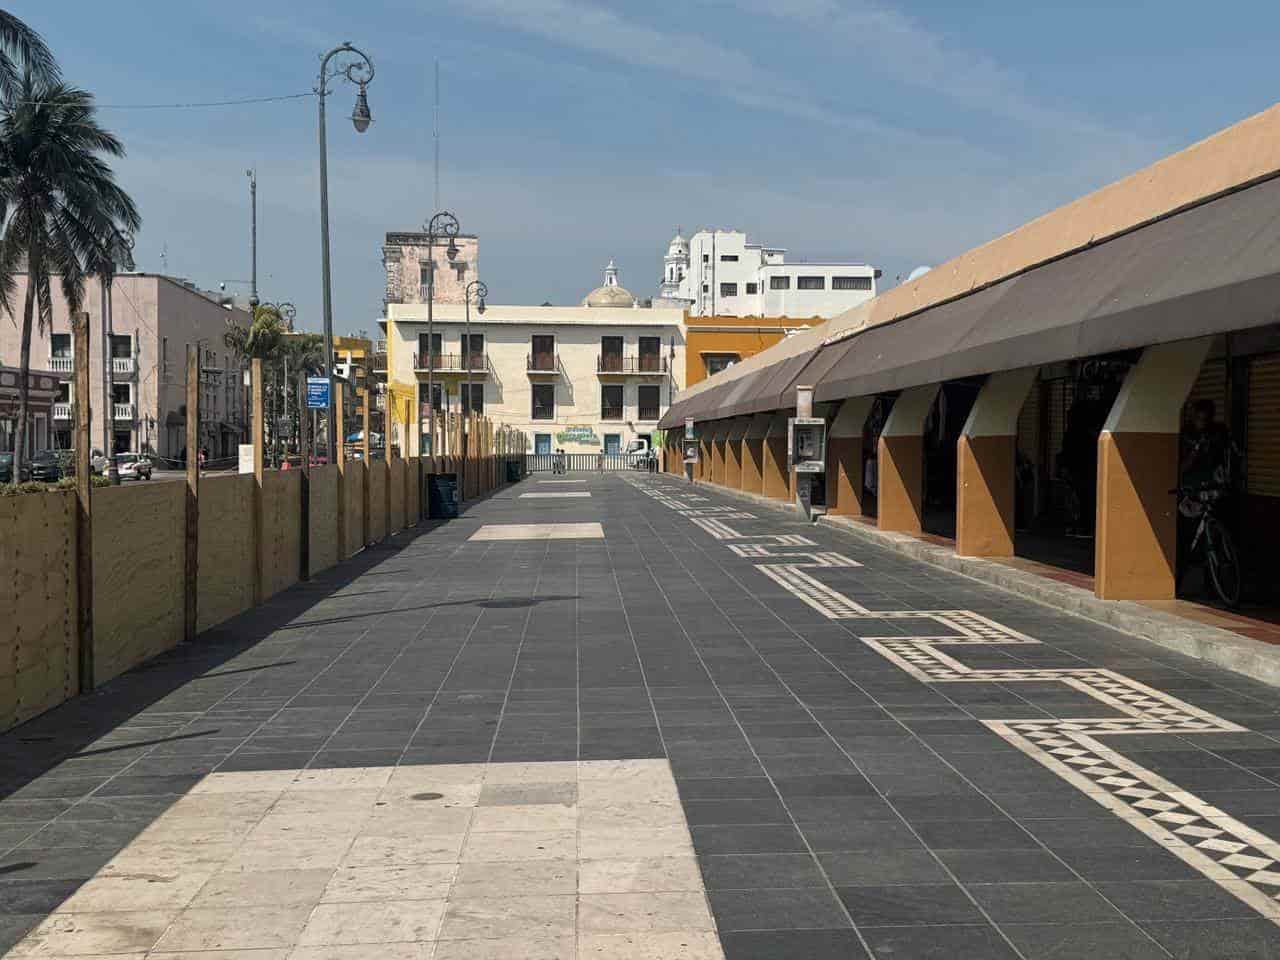 Afectaciones económicas en el Mercado de Artesanías por obras de Plaza Heroísmo Veracruzano